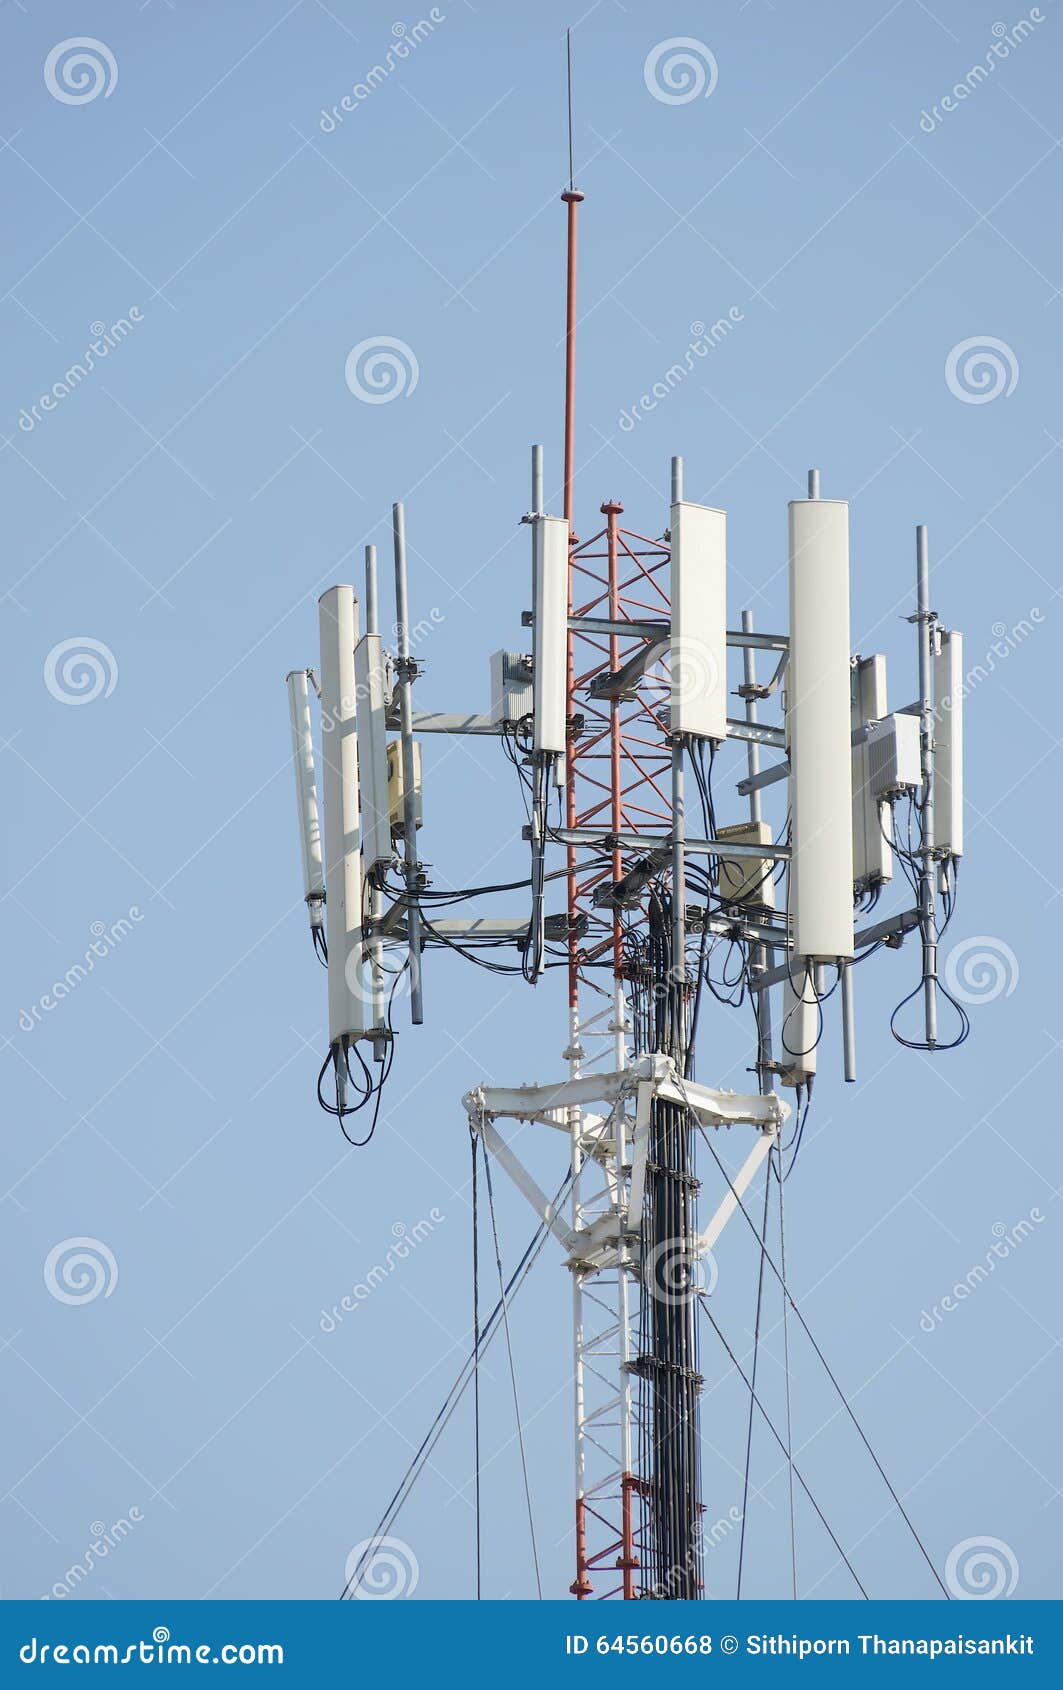 antena señal celular